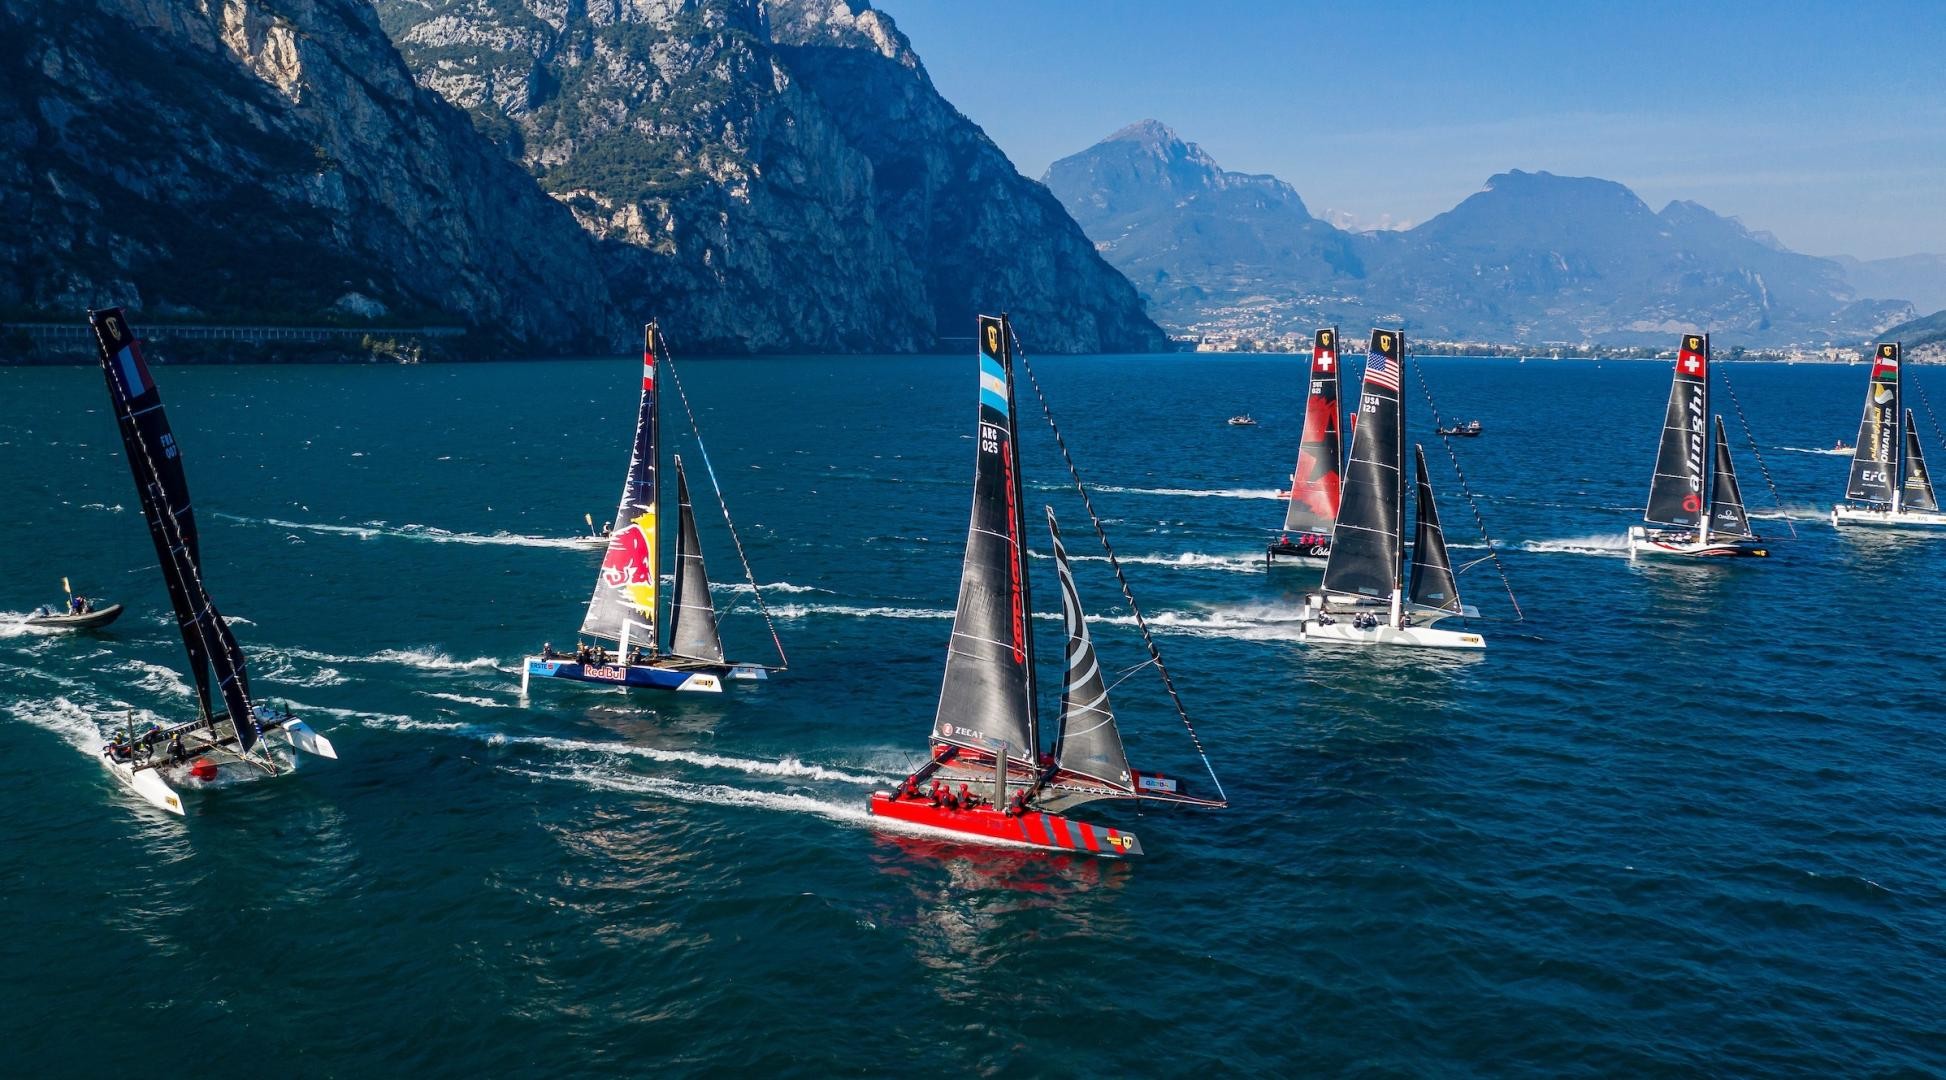 Azione sul Lago di Garda, un campo di regata sempre affascinante. Foto: Sailing Energy / GC32 Racing Tour